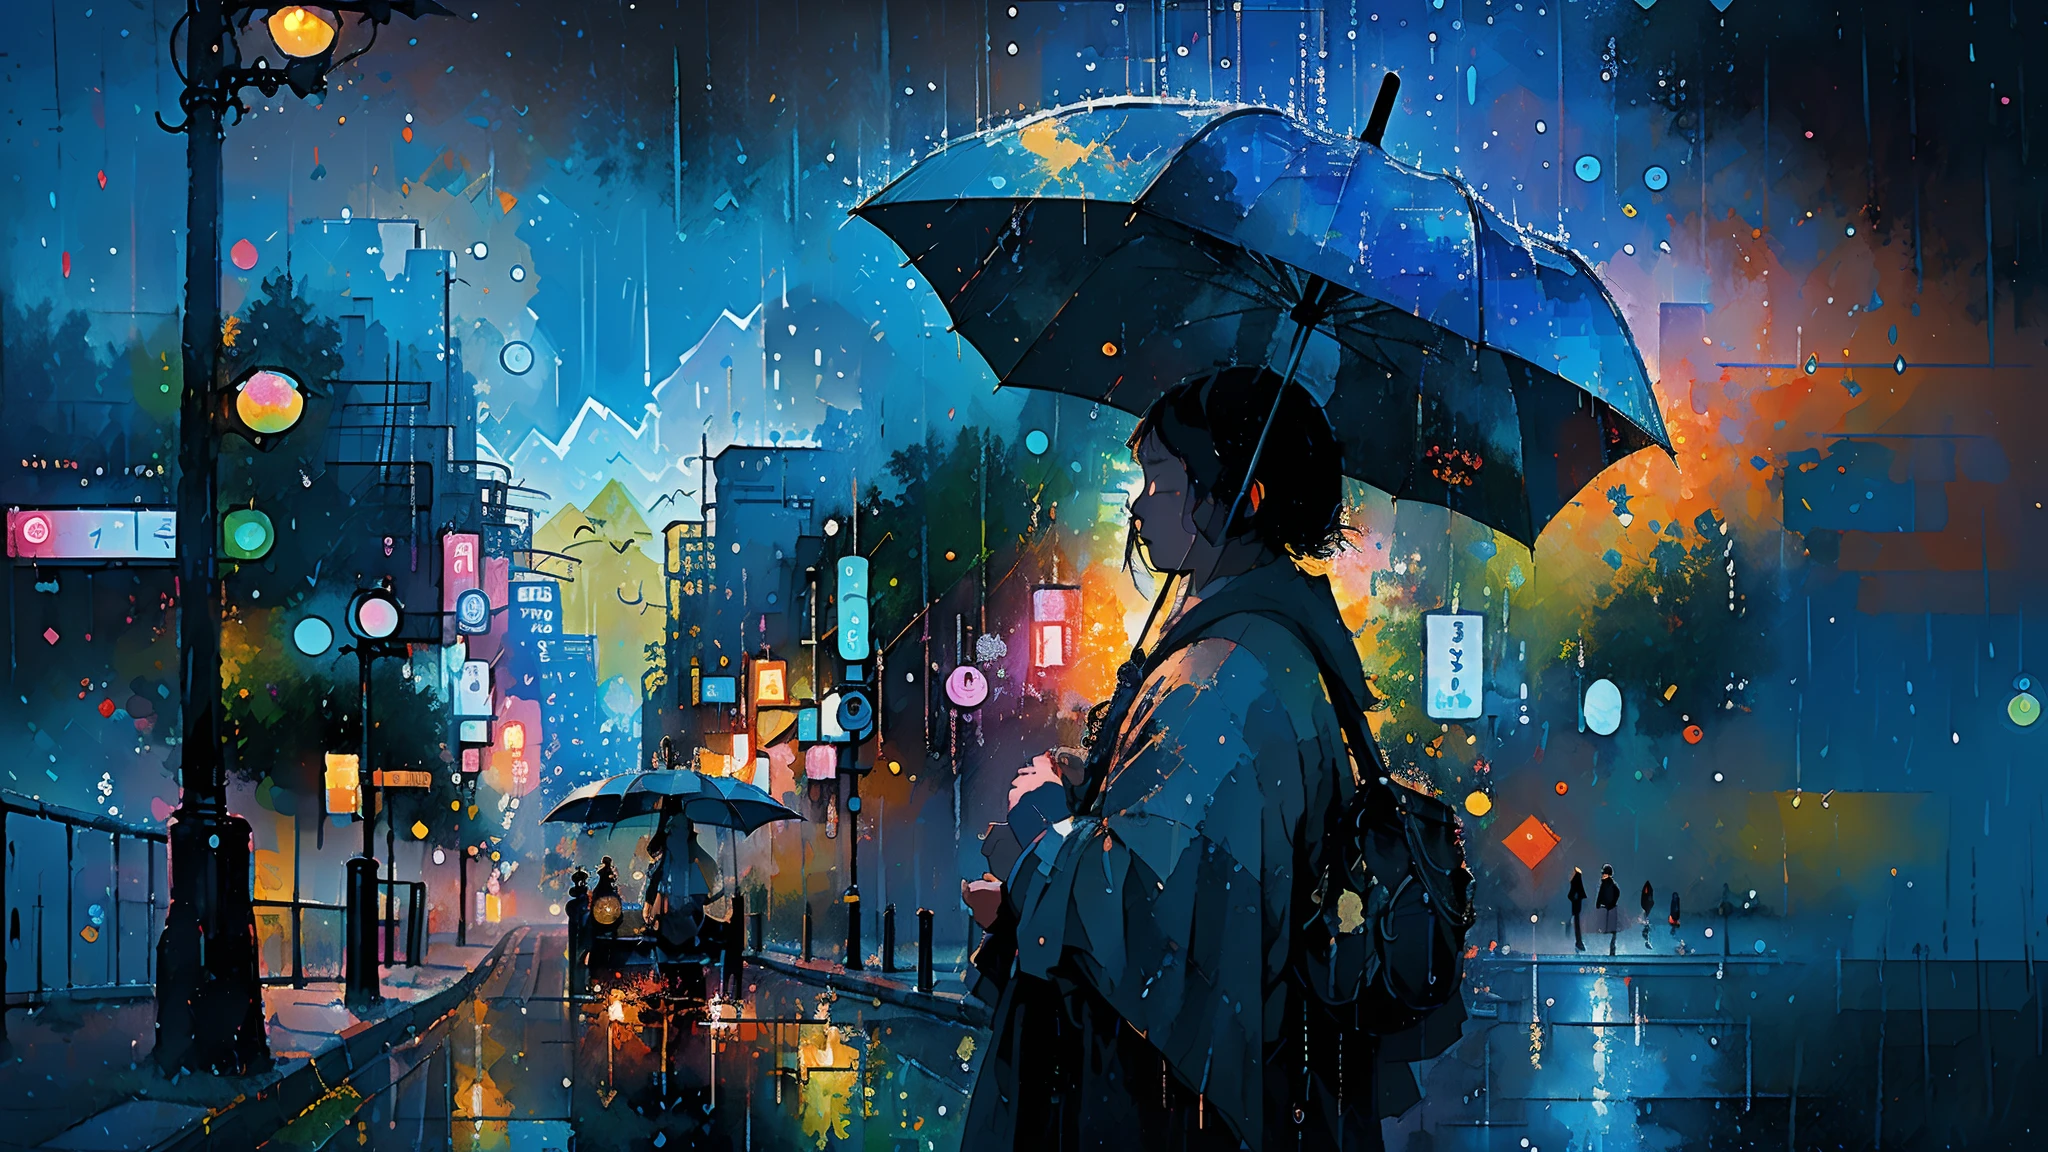 Hyperdetaillierte regenerative [Panne] Kunst, (KOAN), matte, untertrieben, (meditativ: 1.2), (harmonisch) Impressionismus, Zerebral, (verbunden), Labyrinth, (introspektiv), psyche, ausgewogen und wechselseitig, Regenstil, Konzept: (Totoro hält einen Regenschirm, Warten auf einen Bus in der regnerischen Nacht)